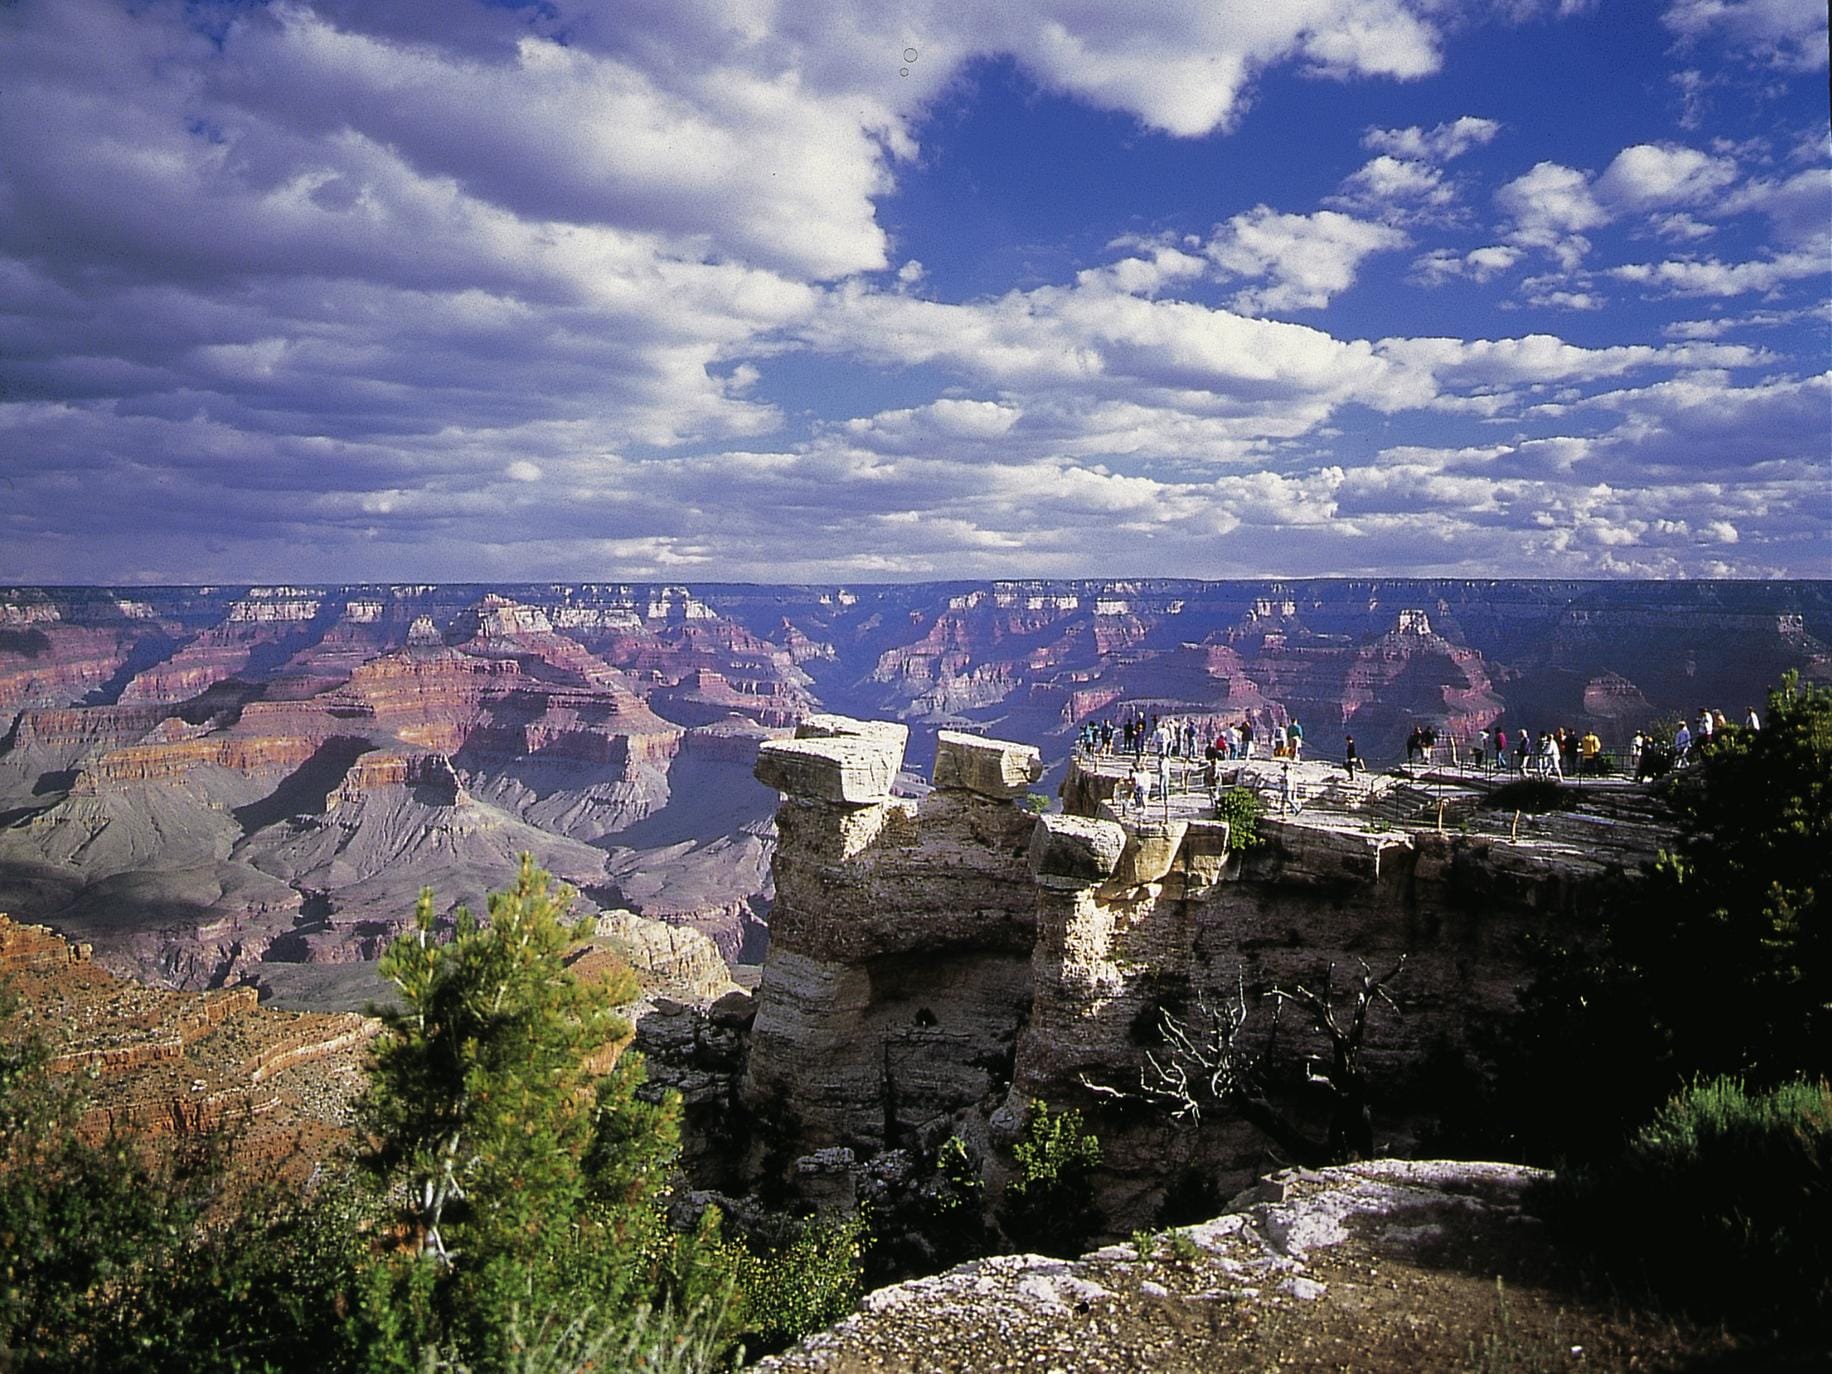 Der Blick in die Weite des Grand Canyon lässt uns für einen Moment den Atem anhalten.